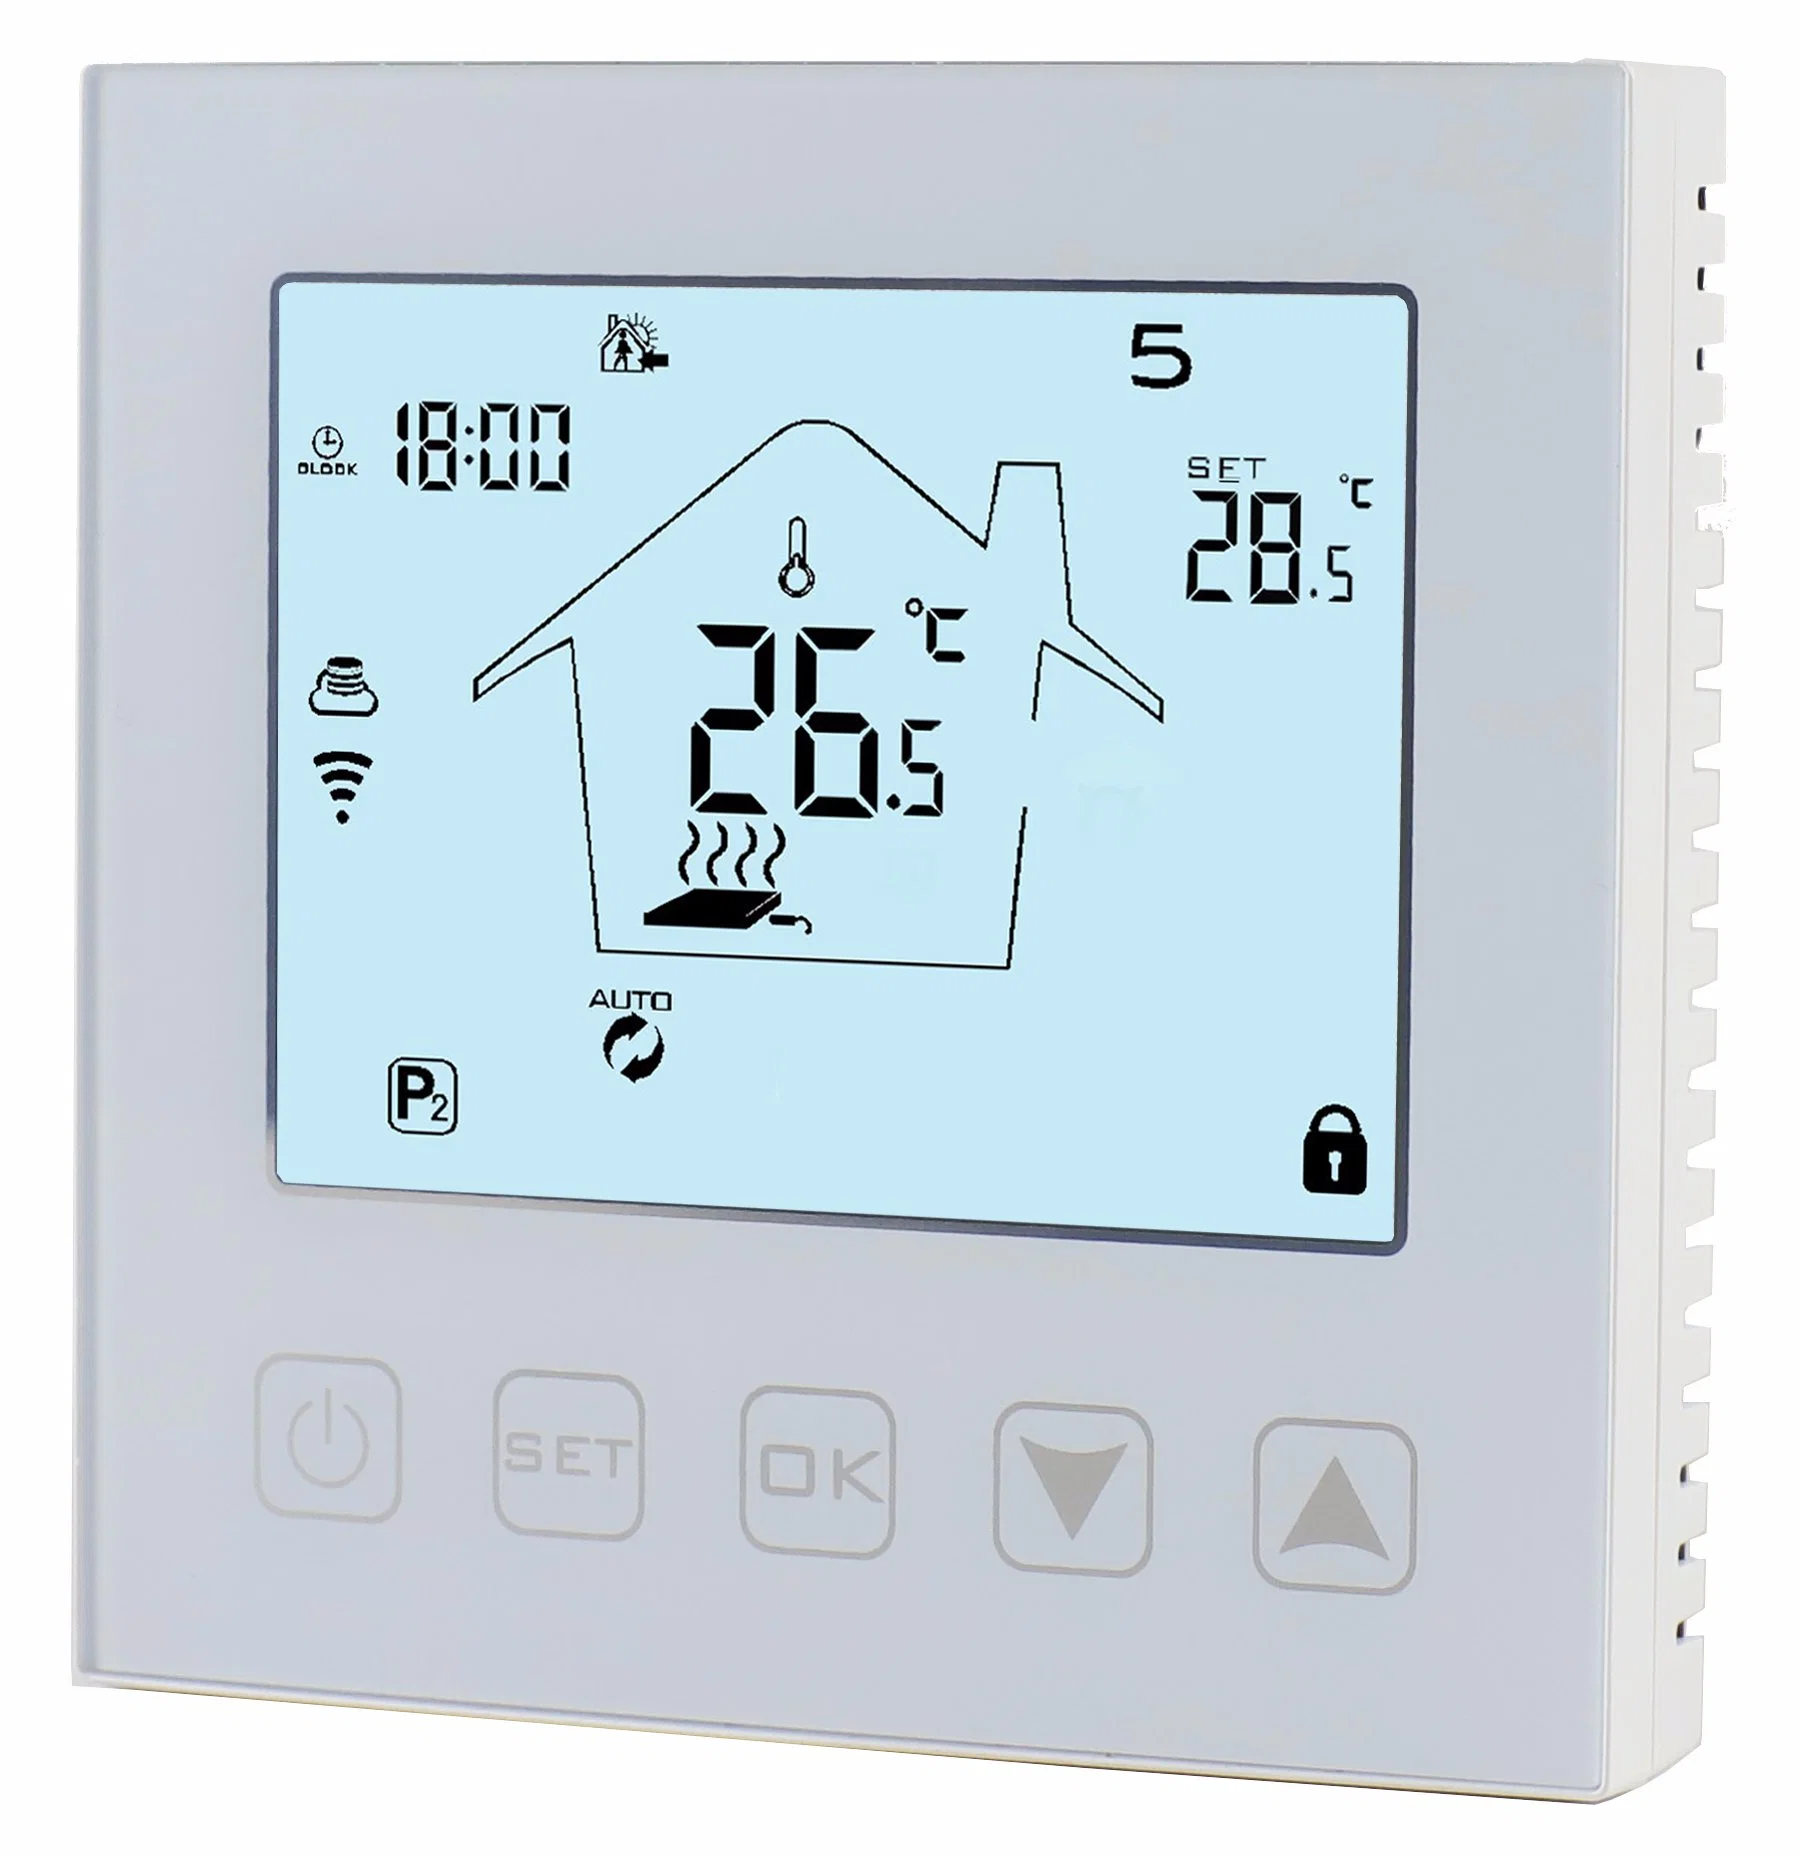 جهاز تنظيم درجة الحرارة الكهربائي 50%0FF WiFi حراسات الحرارة رقم التحكم في درجة الحرارة